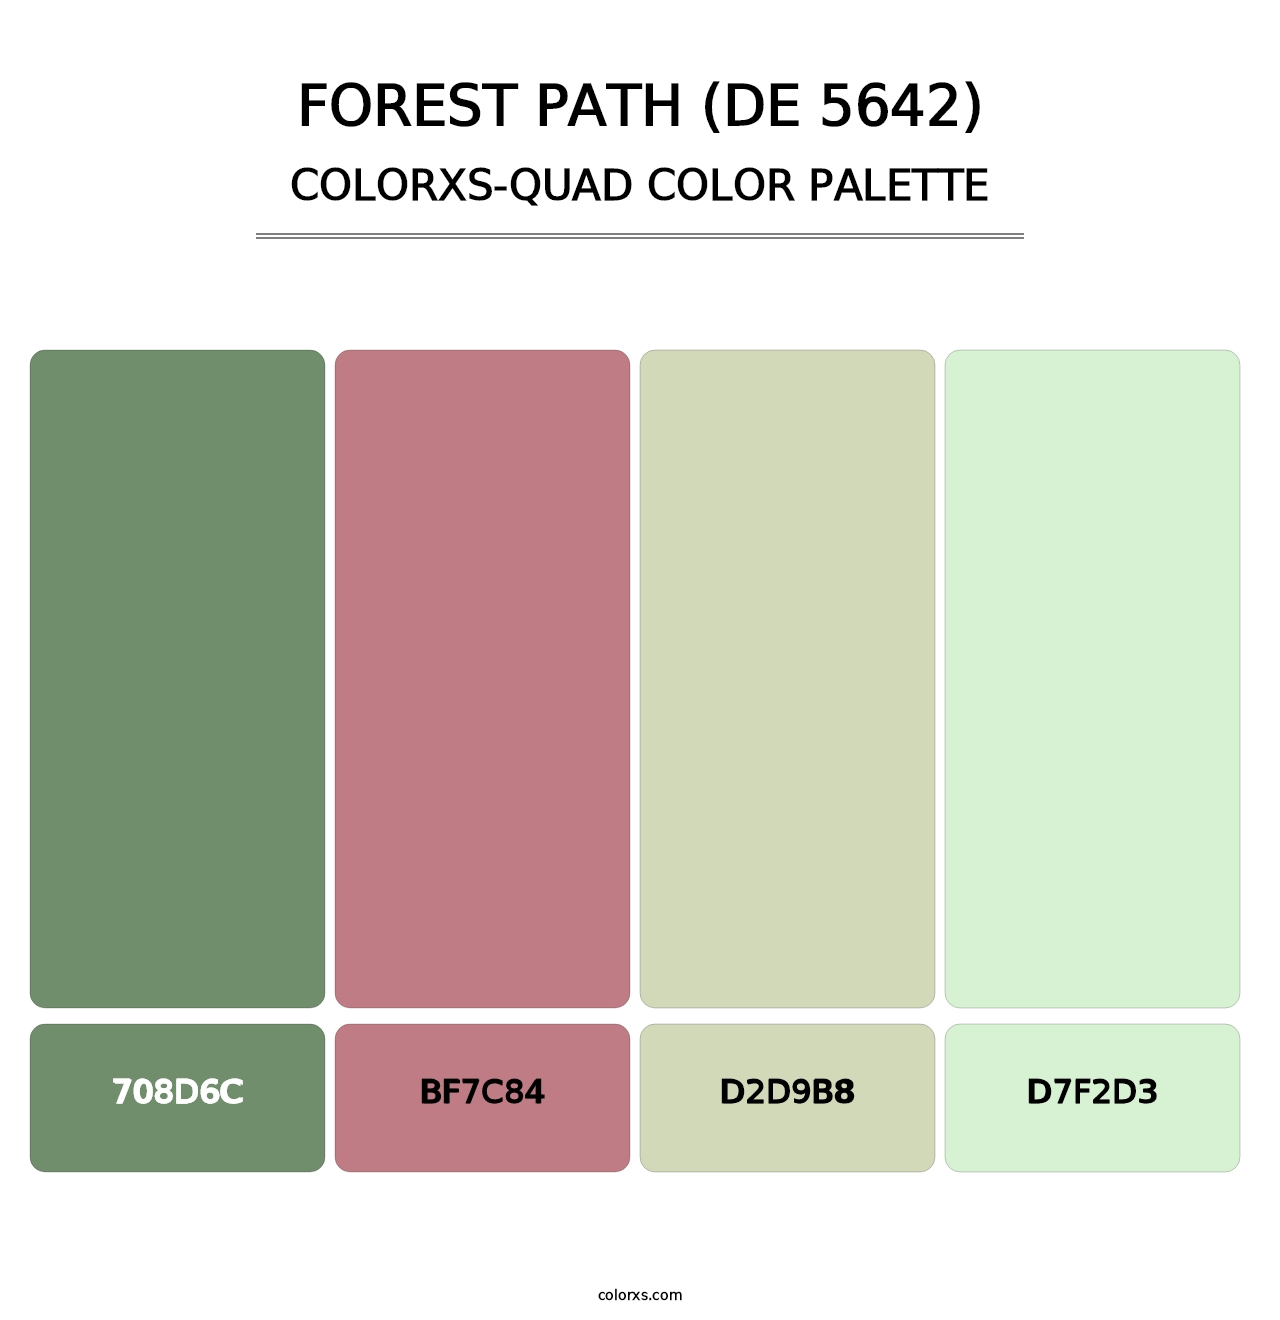 Forest Path (DE 5642) - Colorxs Quad Palette